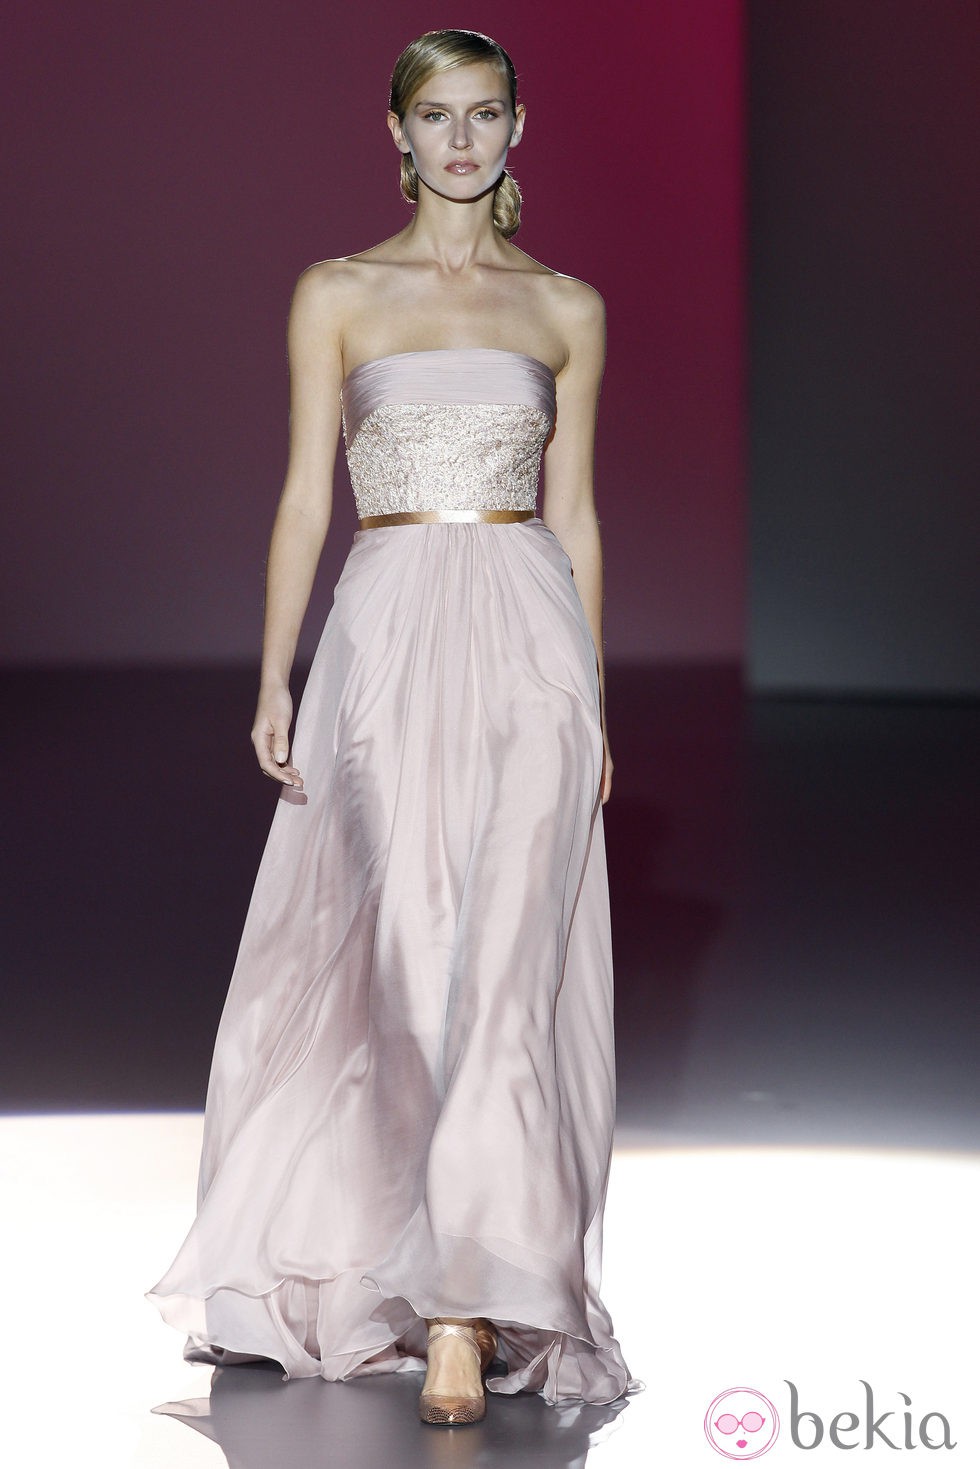 Vestido palabra de honor de la colección primavera/verano 2014 de Hannibal Laguna en Madrid Fashion Week